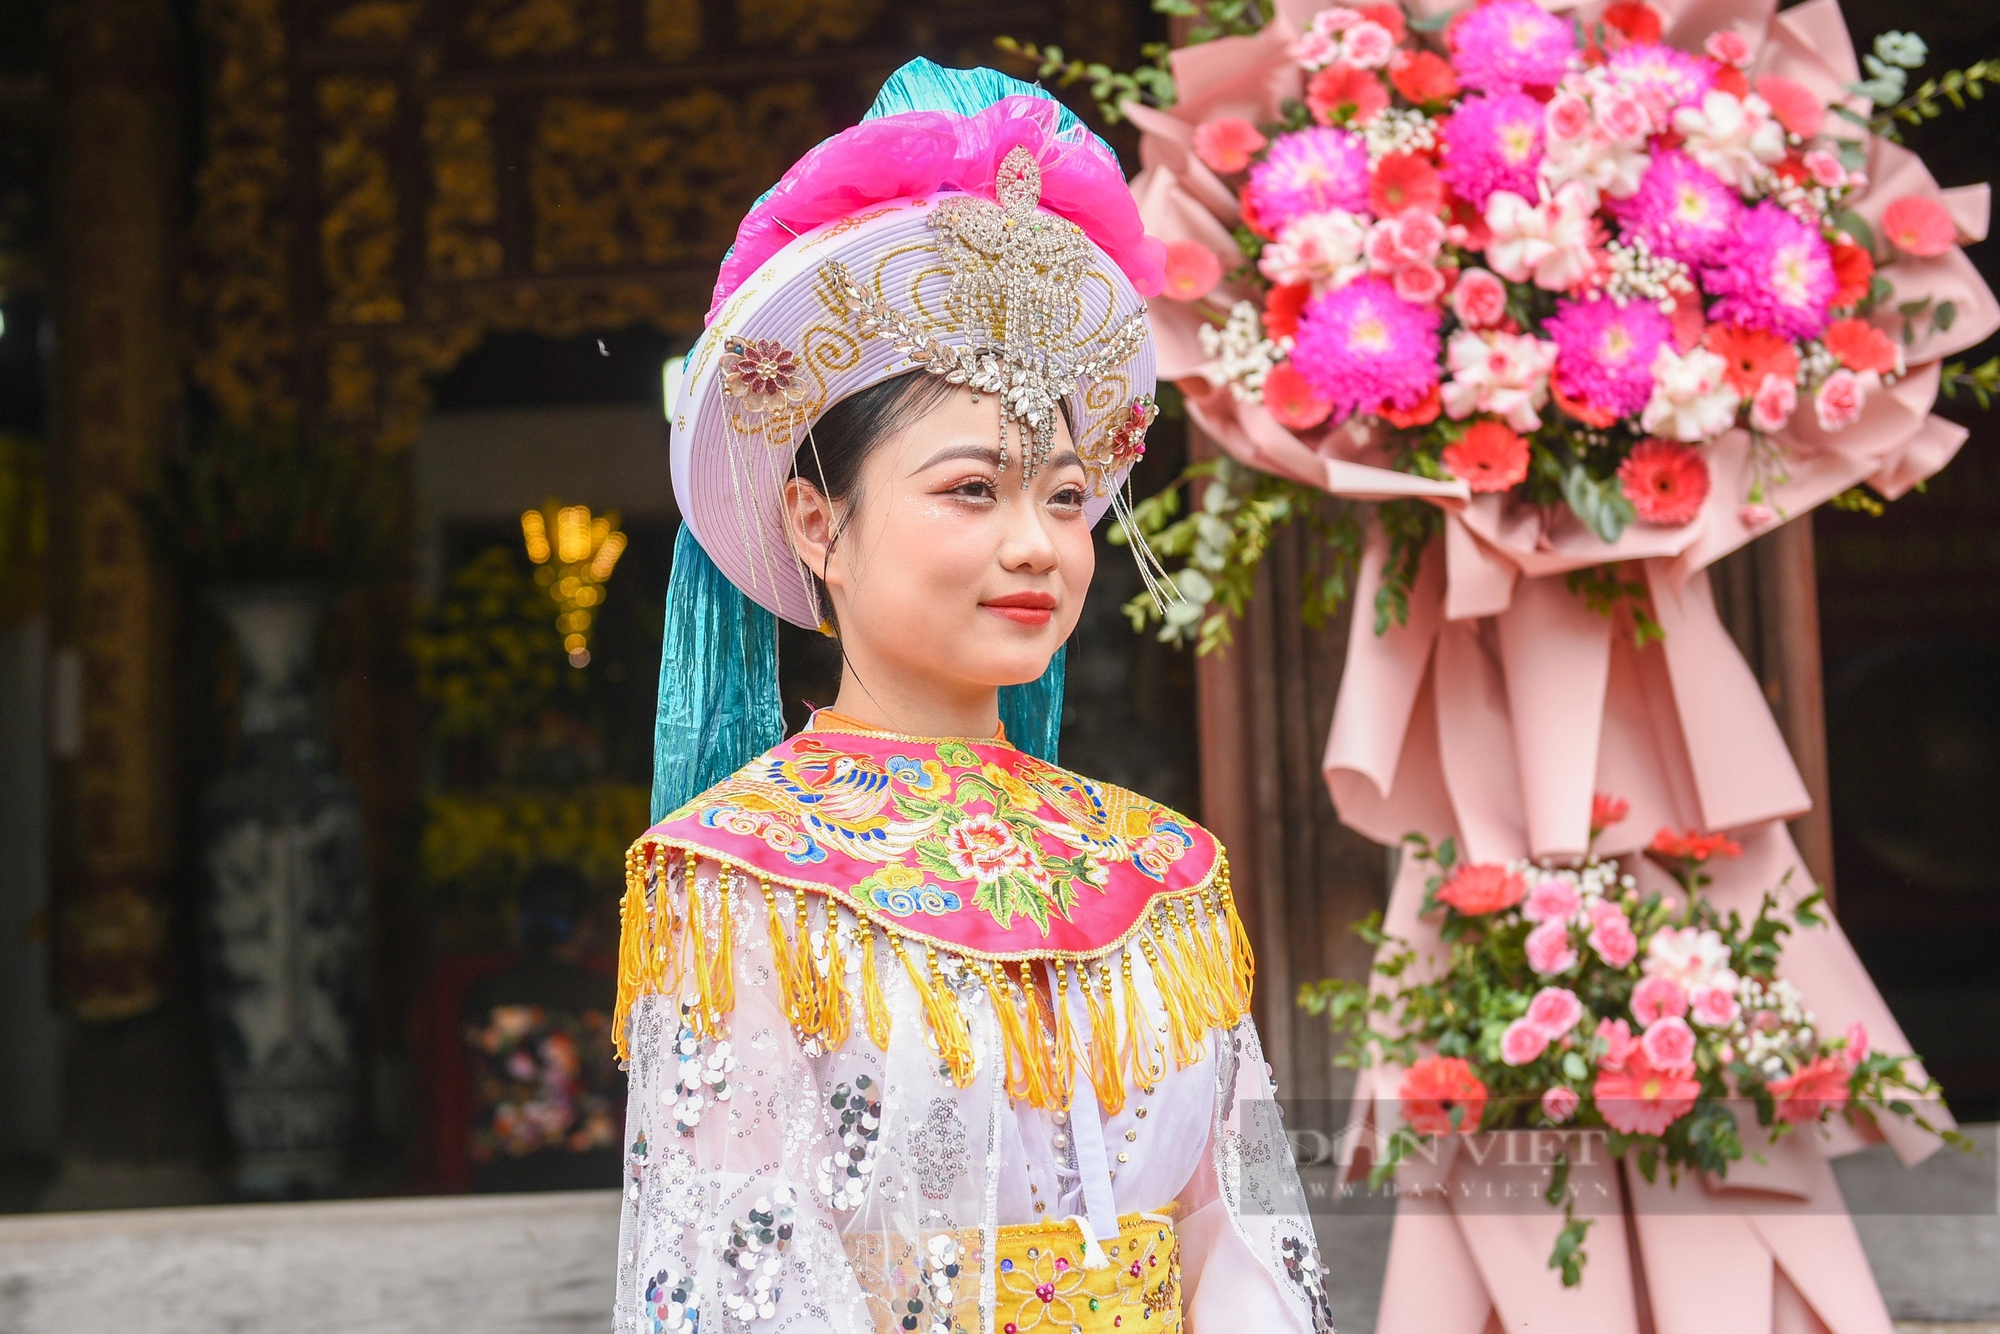 Cô gái 20 tuổi xinh đẹp vào vai nữ tướng Lê Hoa đi kén rể ở ngoại thành Hà Nội- Ảnh 3.